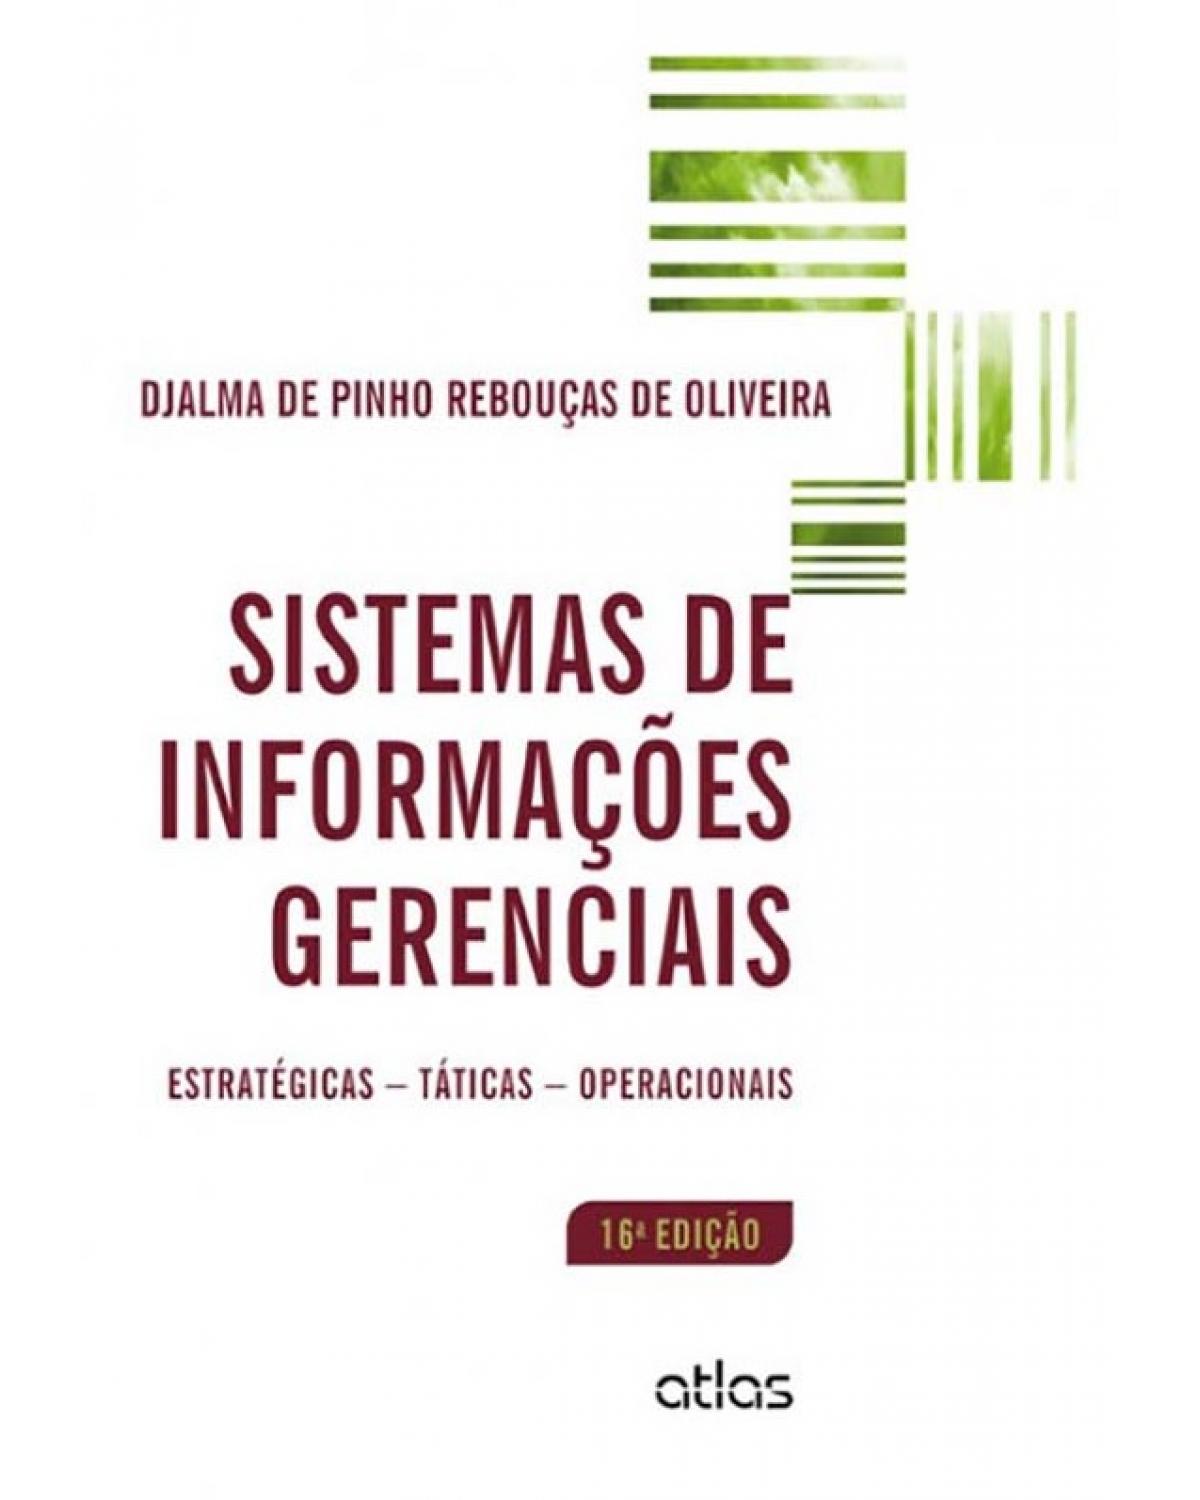 Sistemas de informações gerenciais - Estratégicas, táticas, operacionais - 16ª Edição | 2014